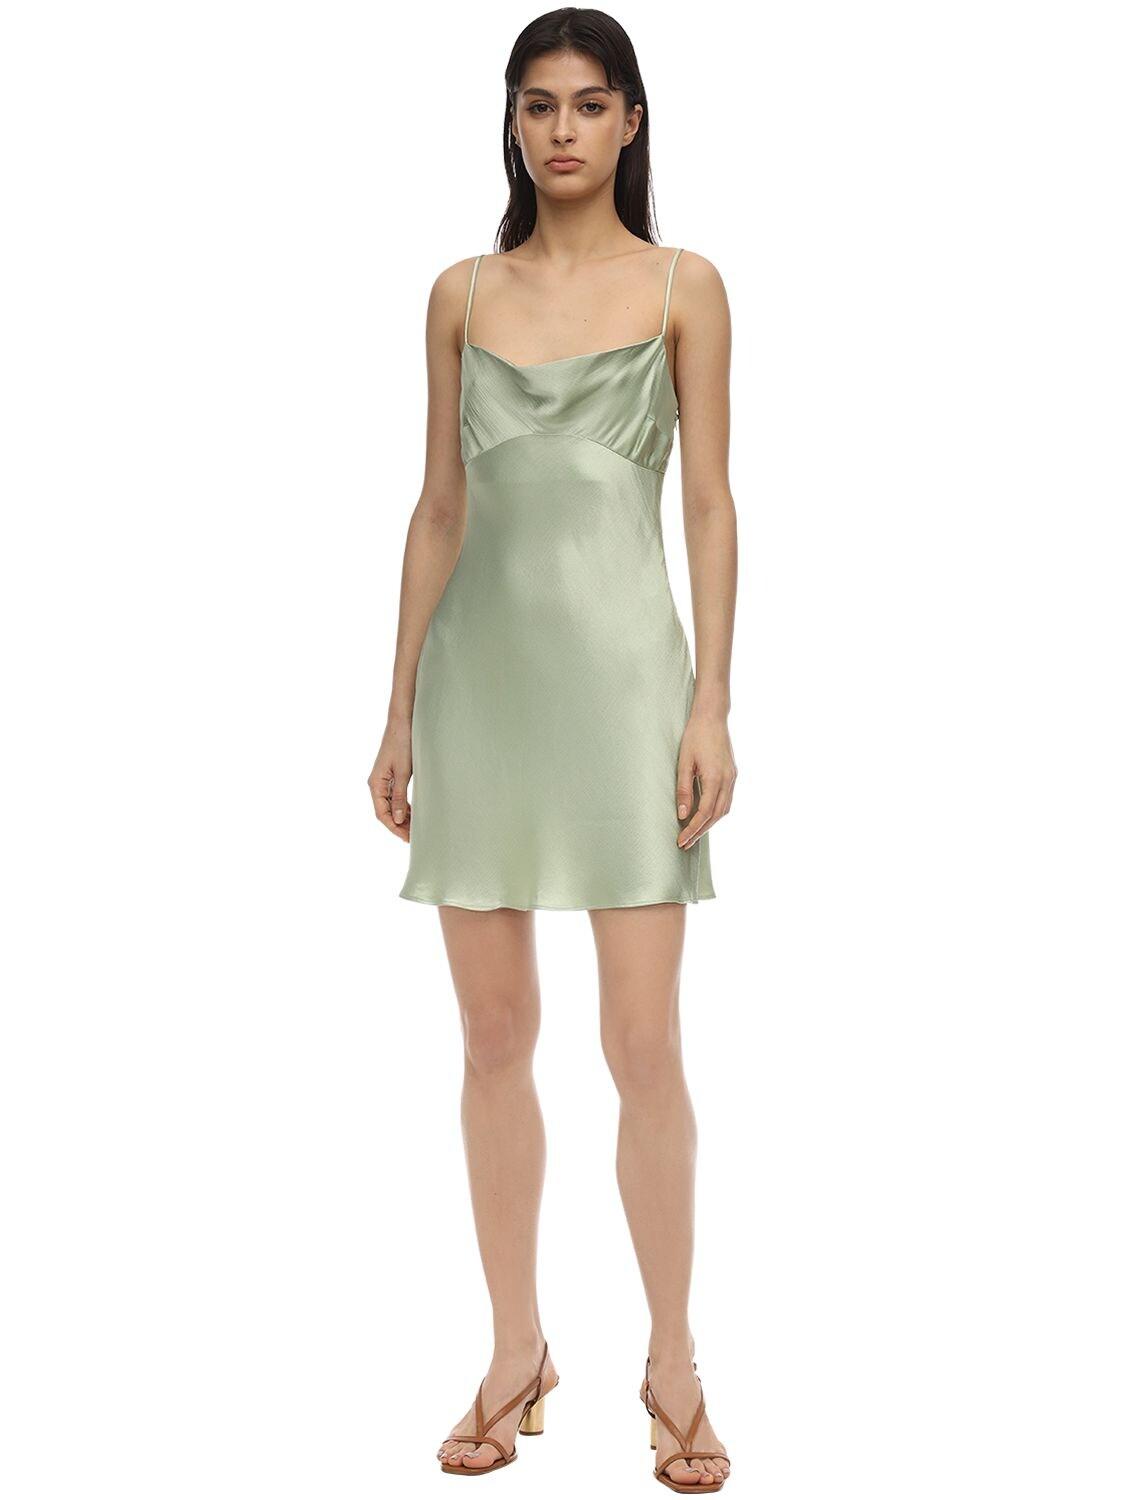 Bec & Bridge Crest Satin Mini Dress in Mint (Green) - Lyst